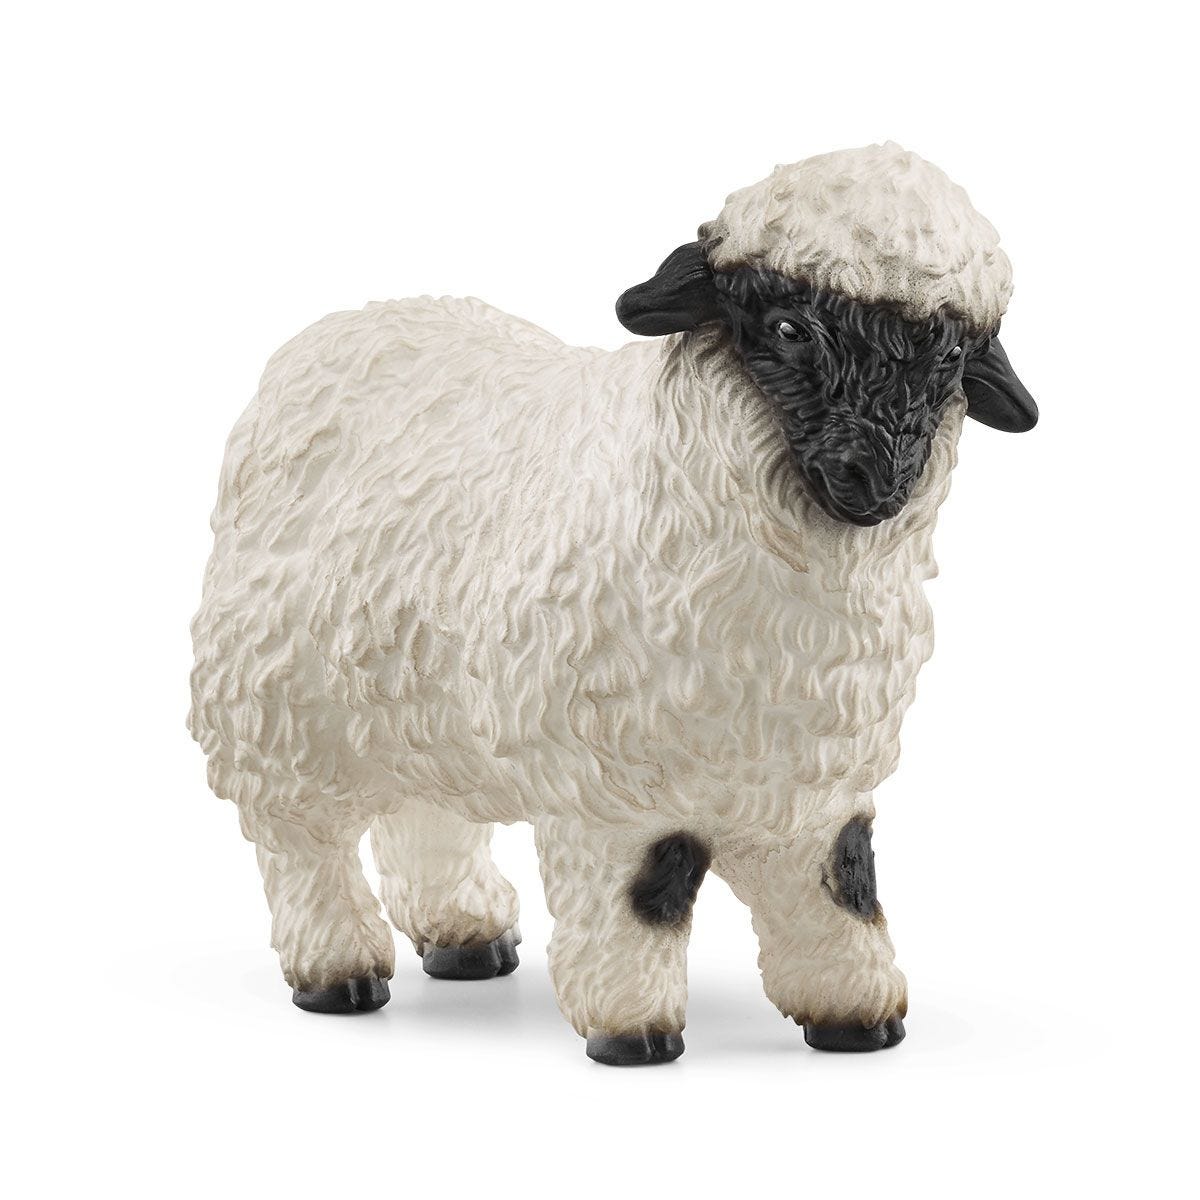 Blacknose Sheep Figurine by Schleich # 13965